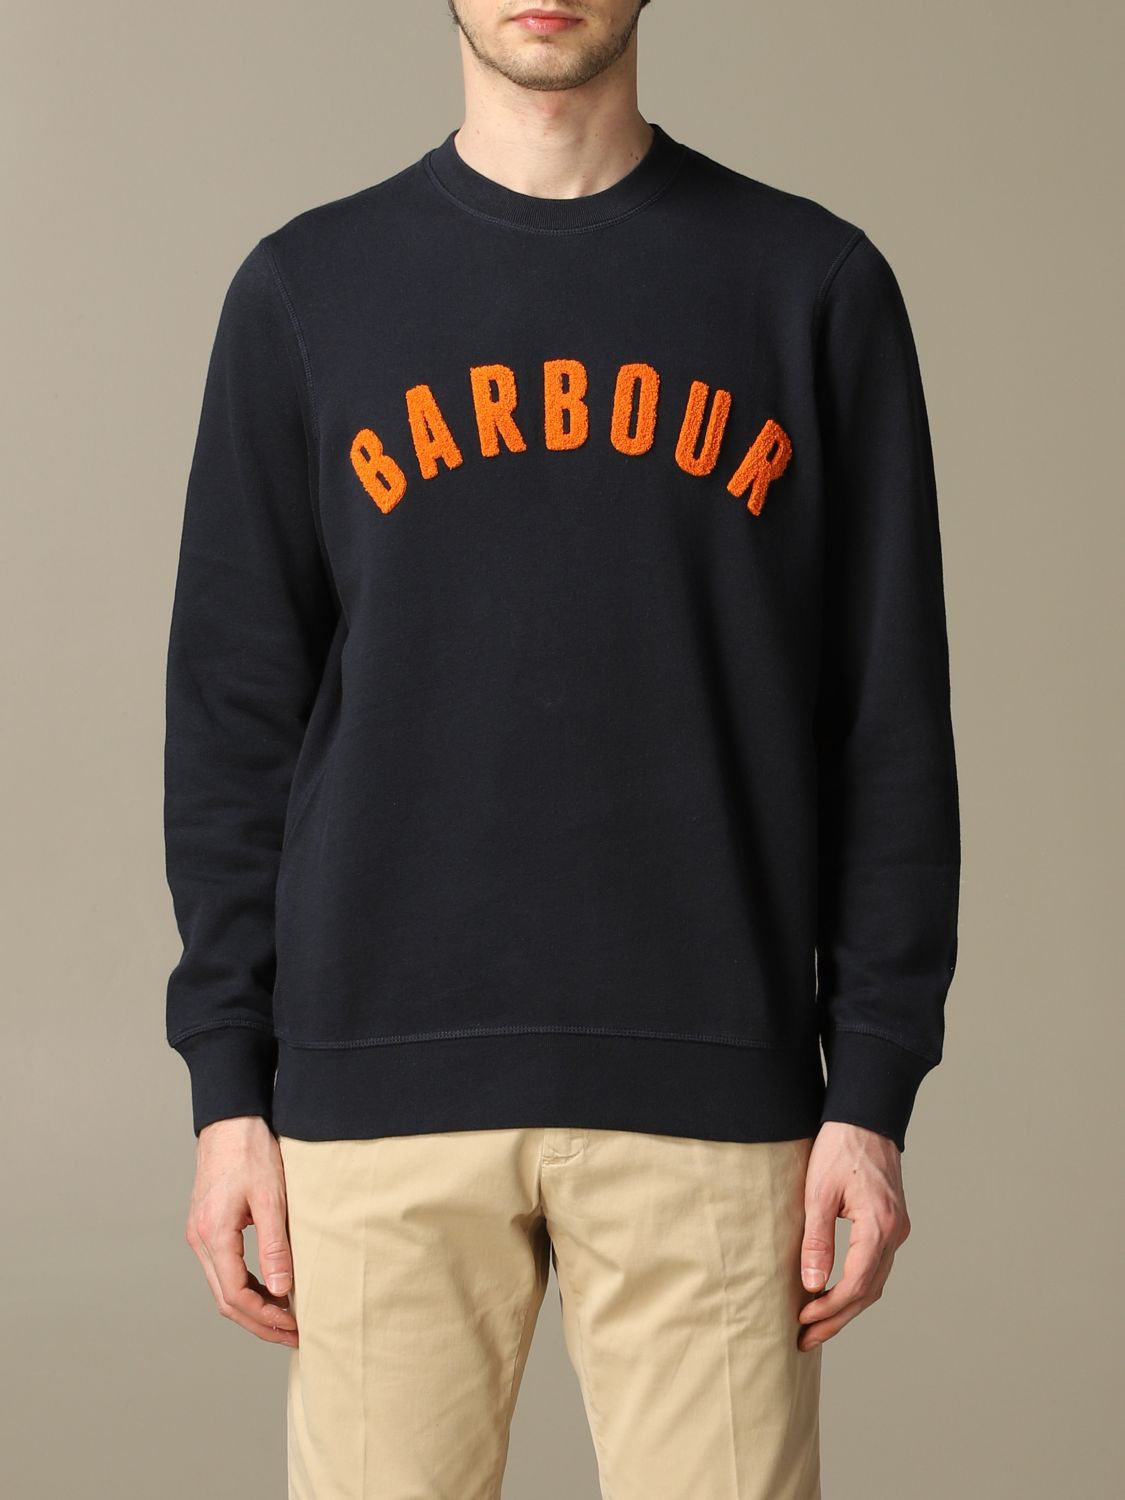 barbour crew neck sweatshirt